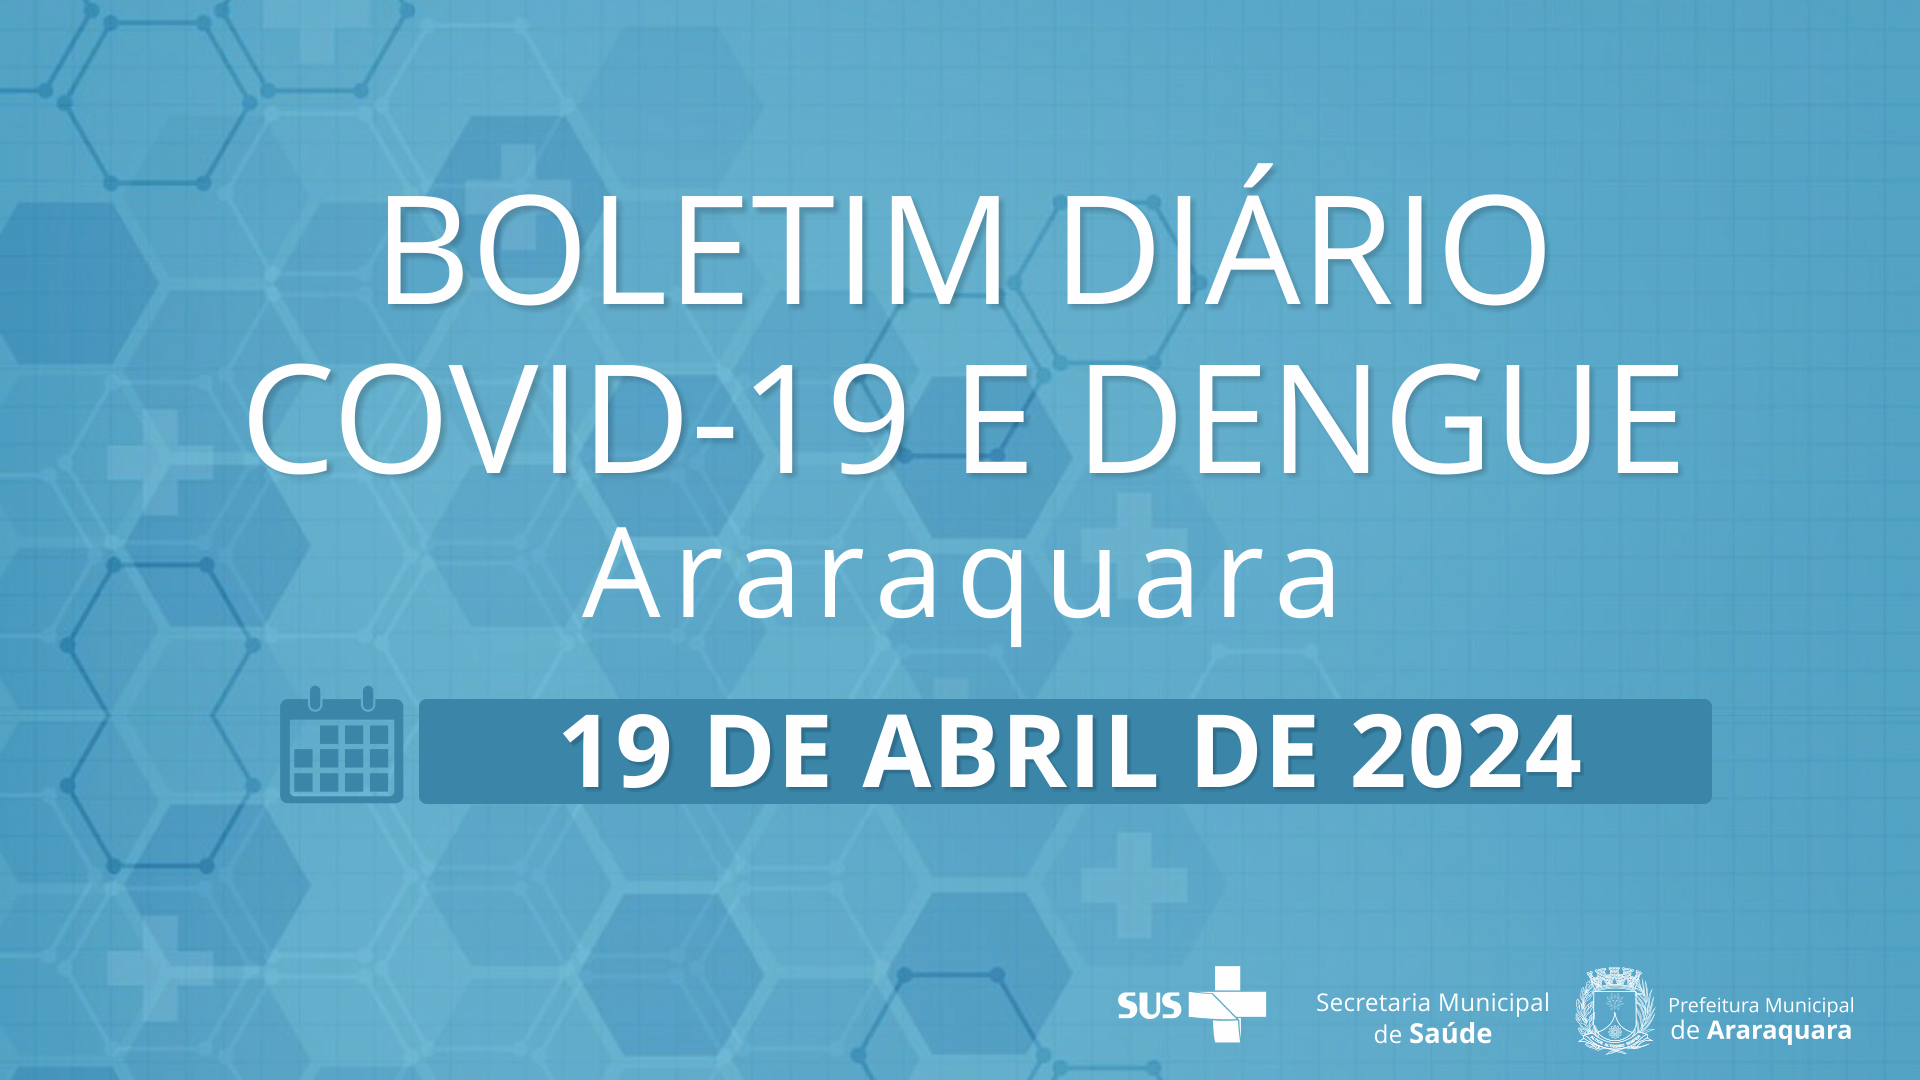 Boletim Diário no 39 – 19 de abril de 2024  - Situação epidemiológica: Covid-19 e dengue em Araraquara